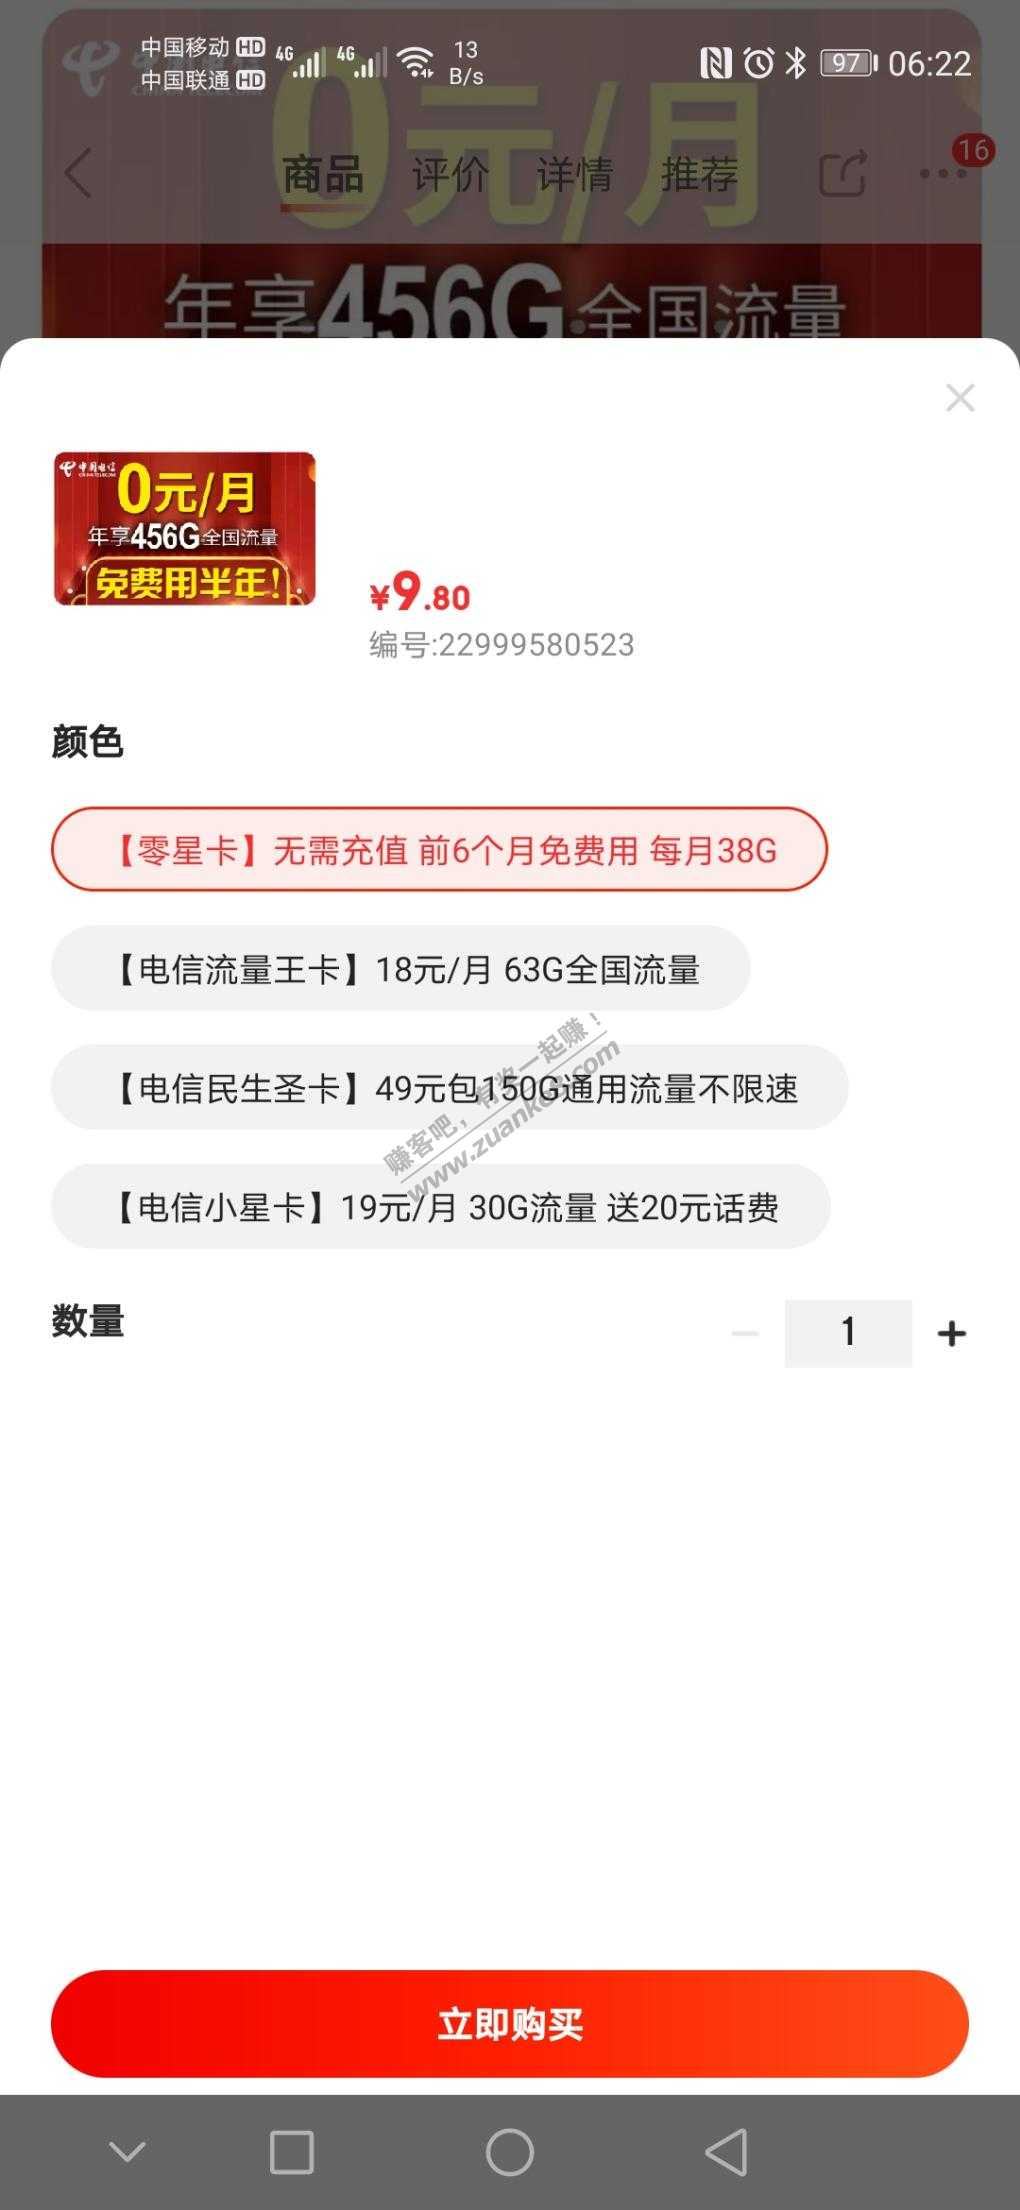 9点8用用半年 中国电信-惠小助(52huixz.com)